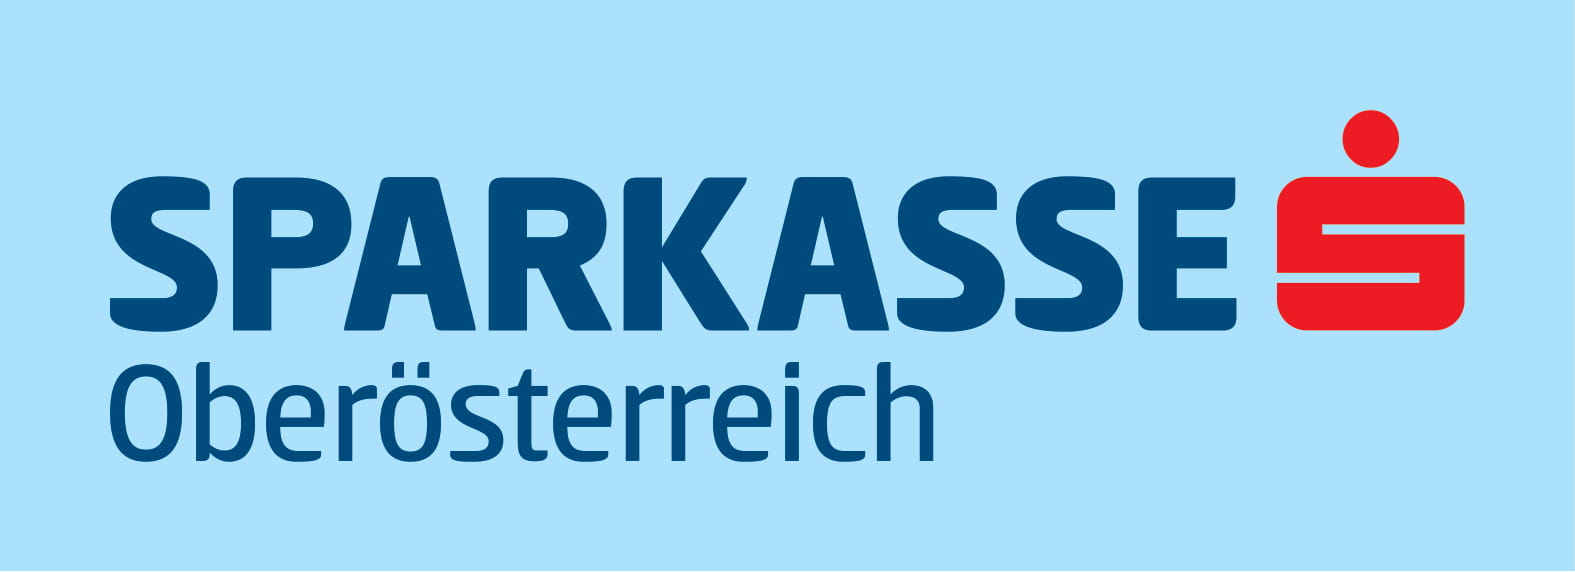 SPK-Oberoesterreich_print_external-material-1.jpg